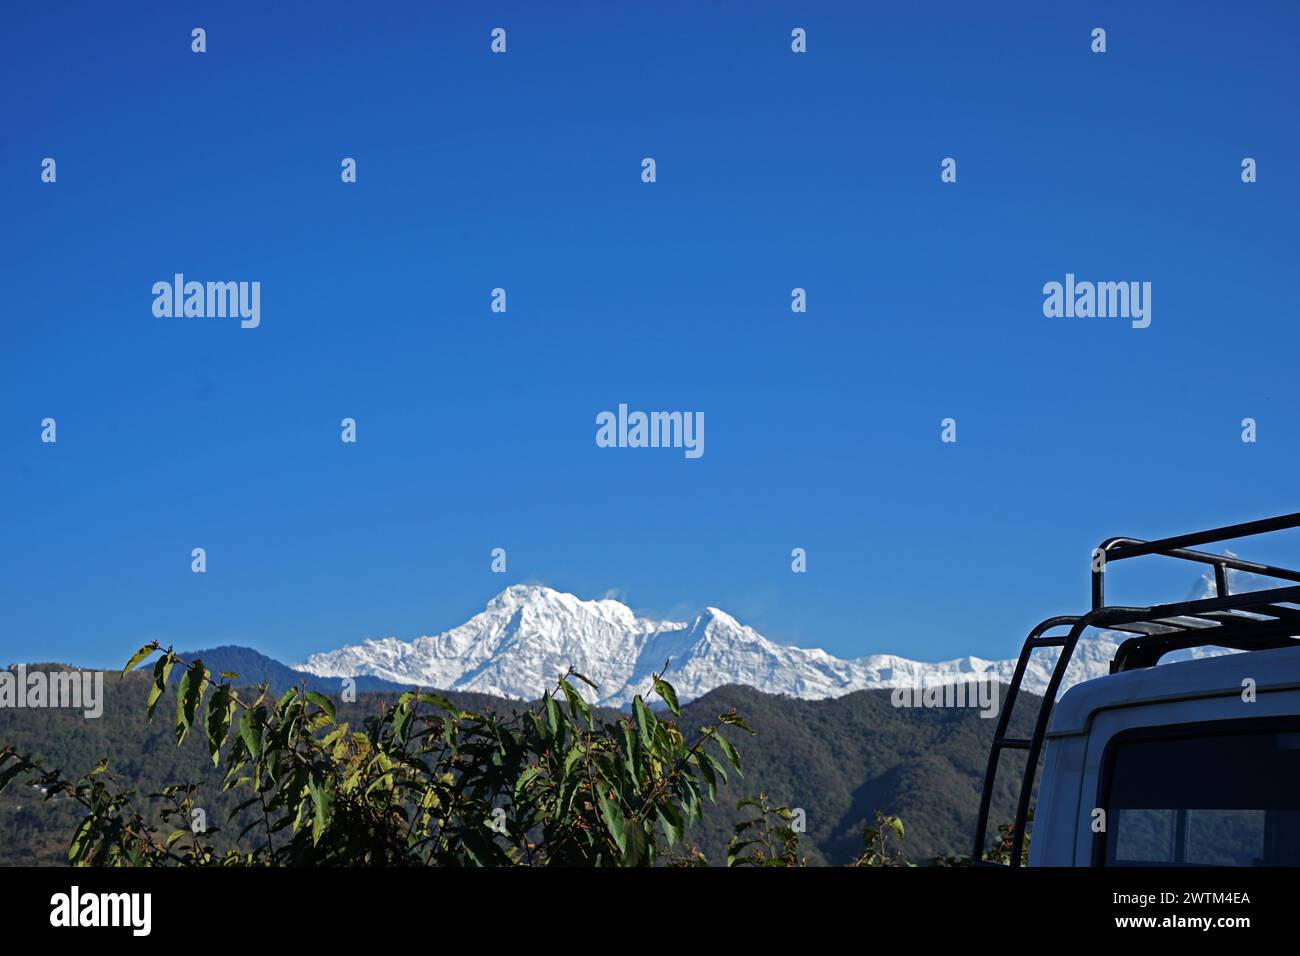 Vue du paysage naturel de Machhapuchhre crête de colline enneigée et Annapurna dans la chaîne de montagnes de l'Himalaya depuis le bouclier de voiture avant - Pokhara, Népal Banque D'Images